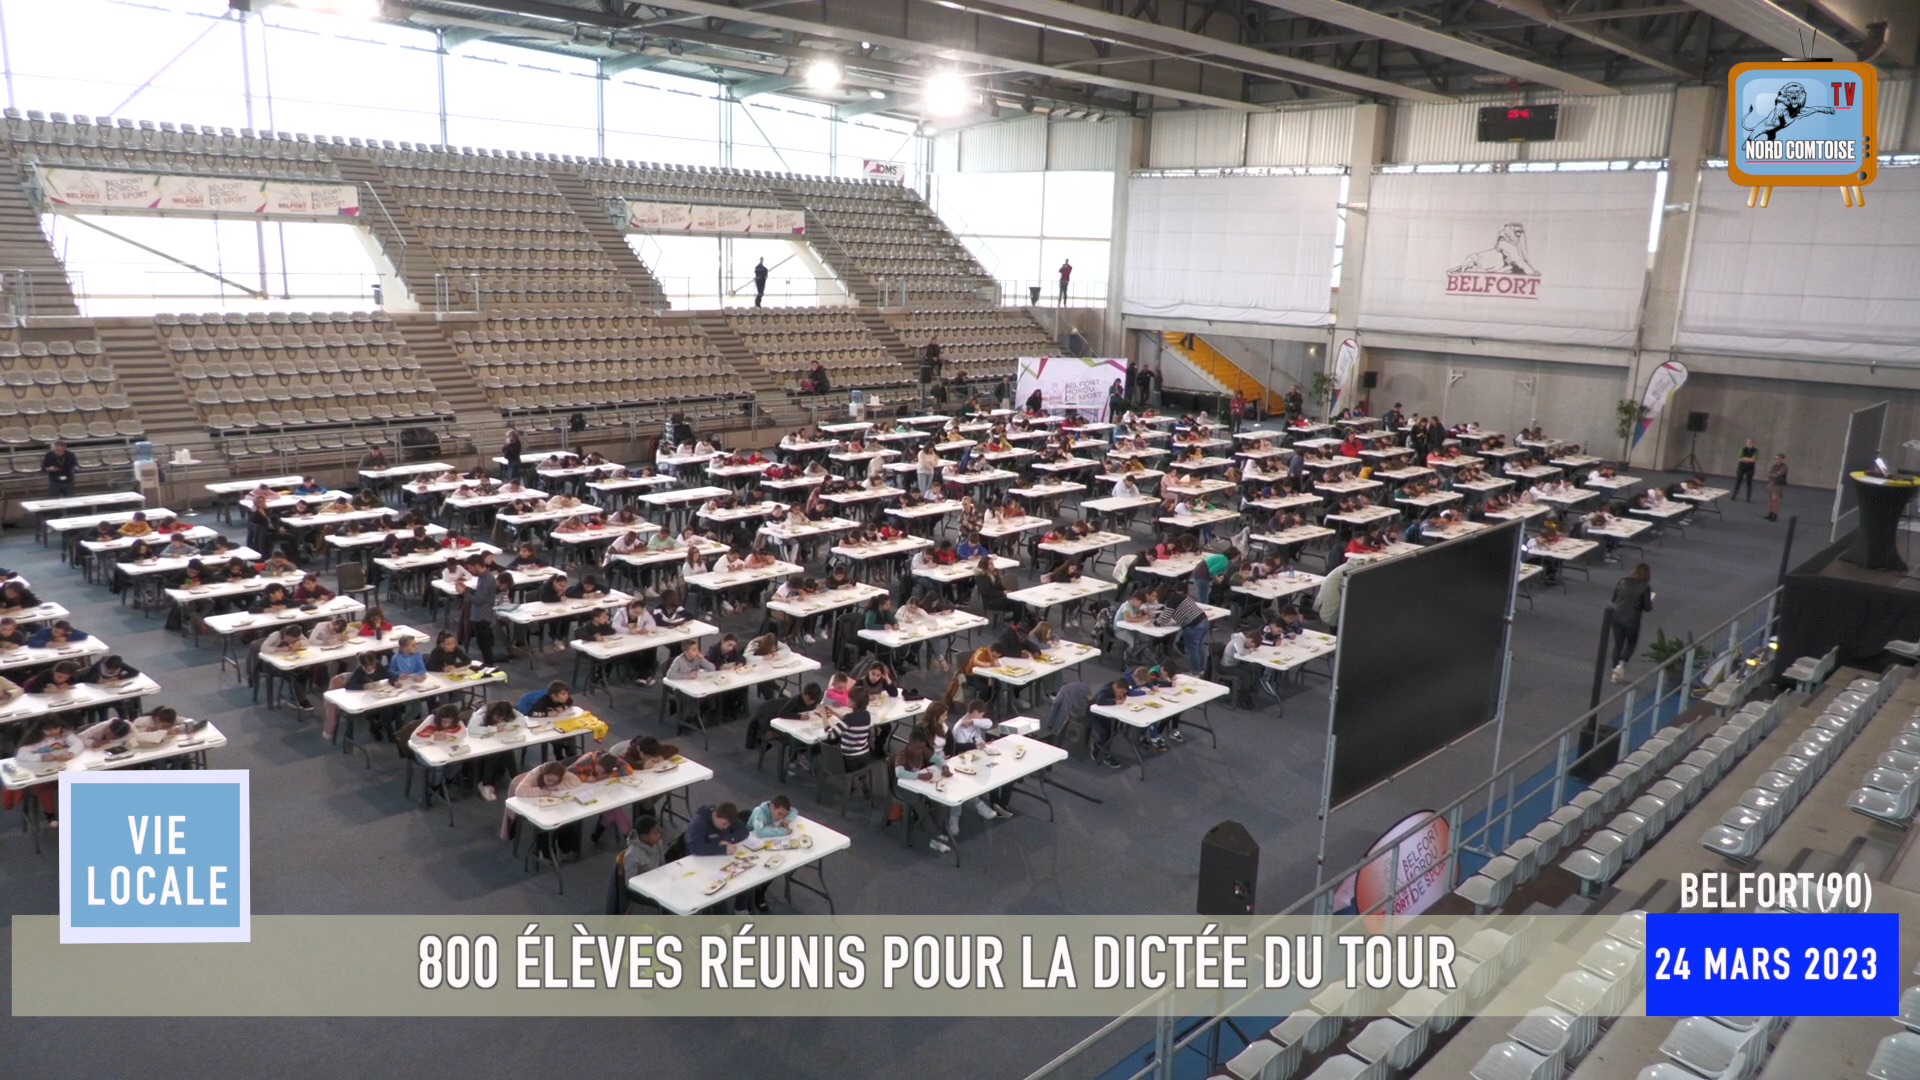 800 ÉLÈVES RÉUNIS POUR LA DICTÉE DU TOUR DE FRANCE À BELFORT(90)